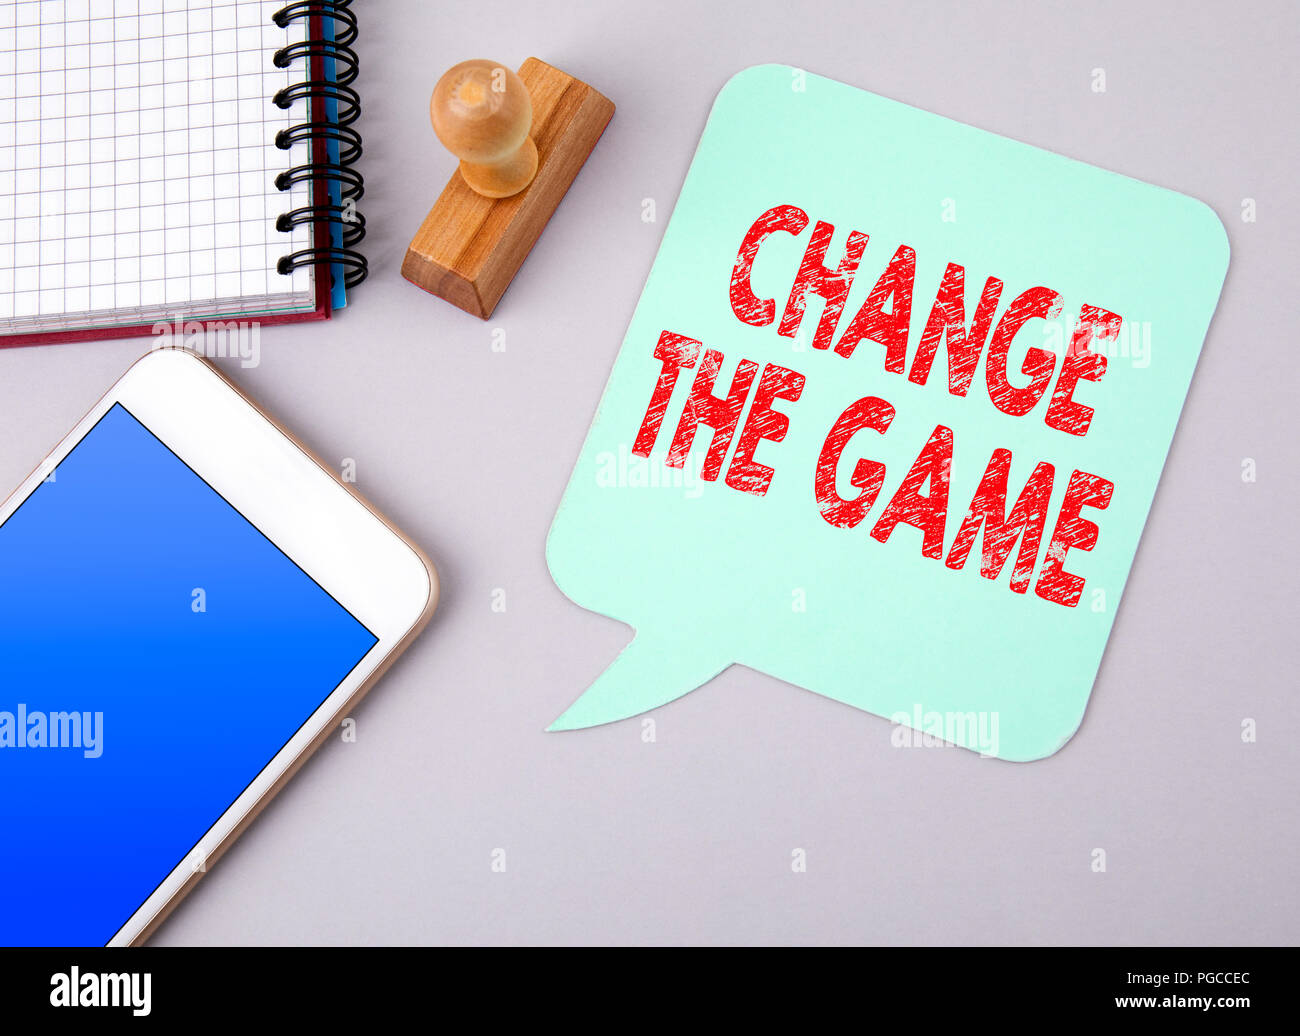 Cambiar el juego. Negocios y medios de comunicación social Foto de stock